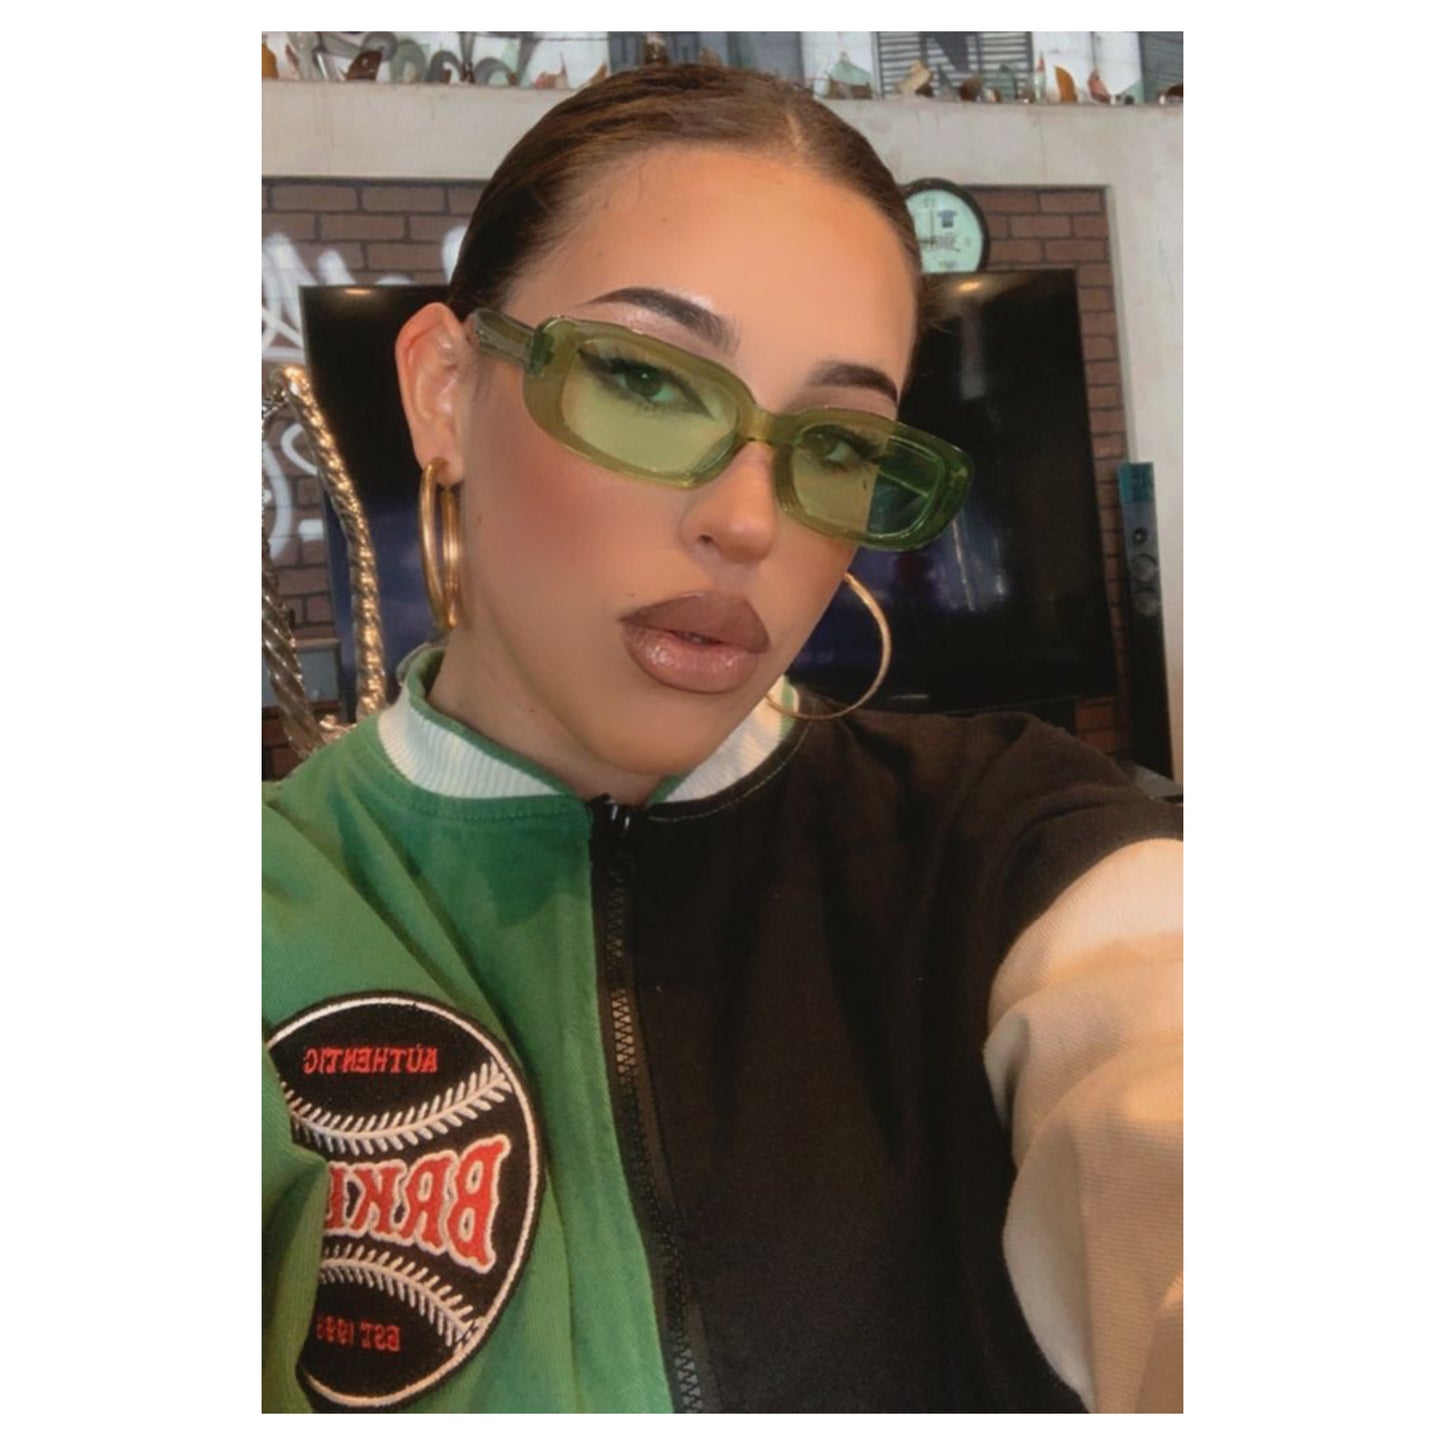 Green Fashion Retro Small Rectangle Sunglasses